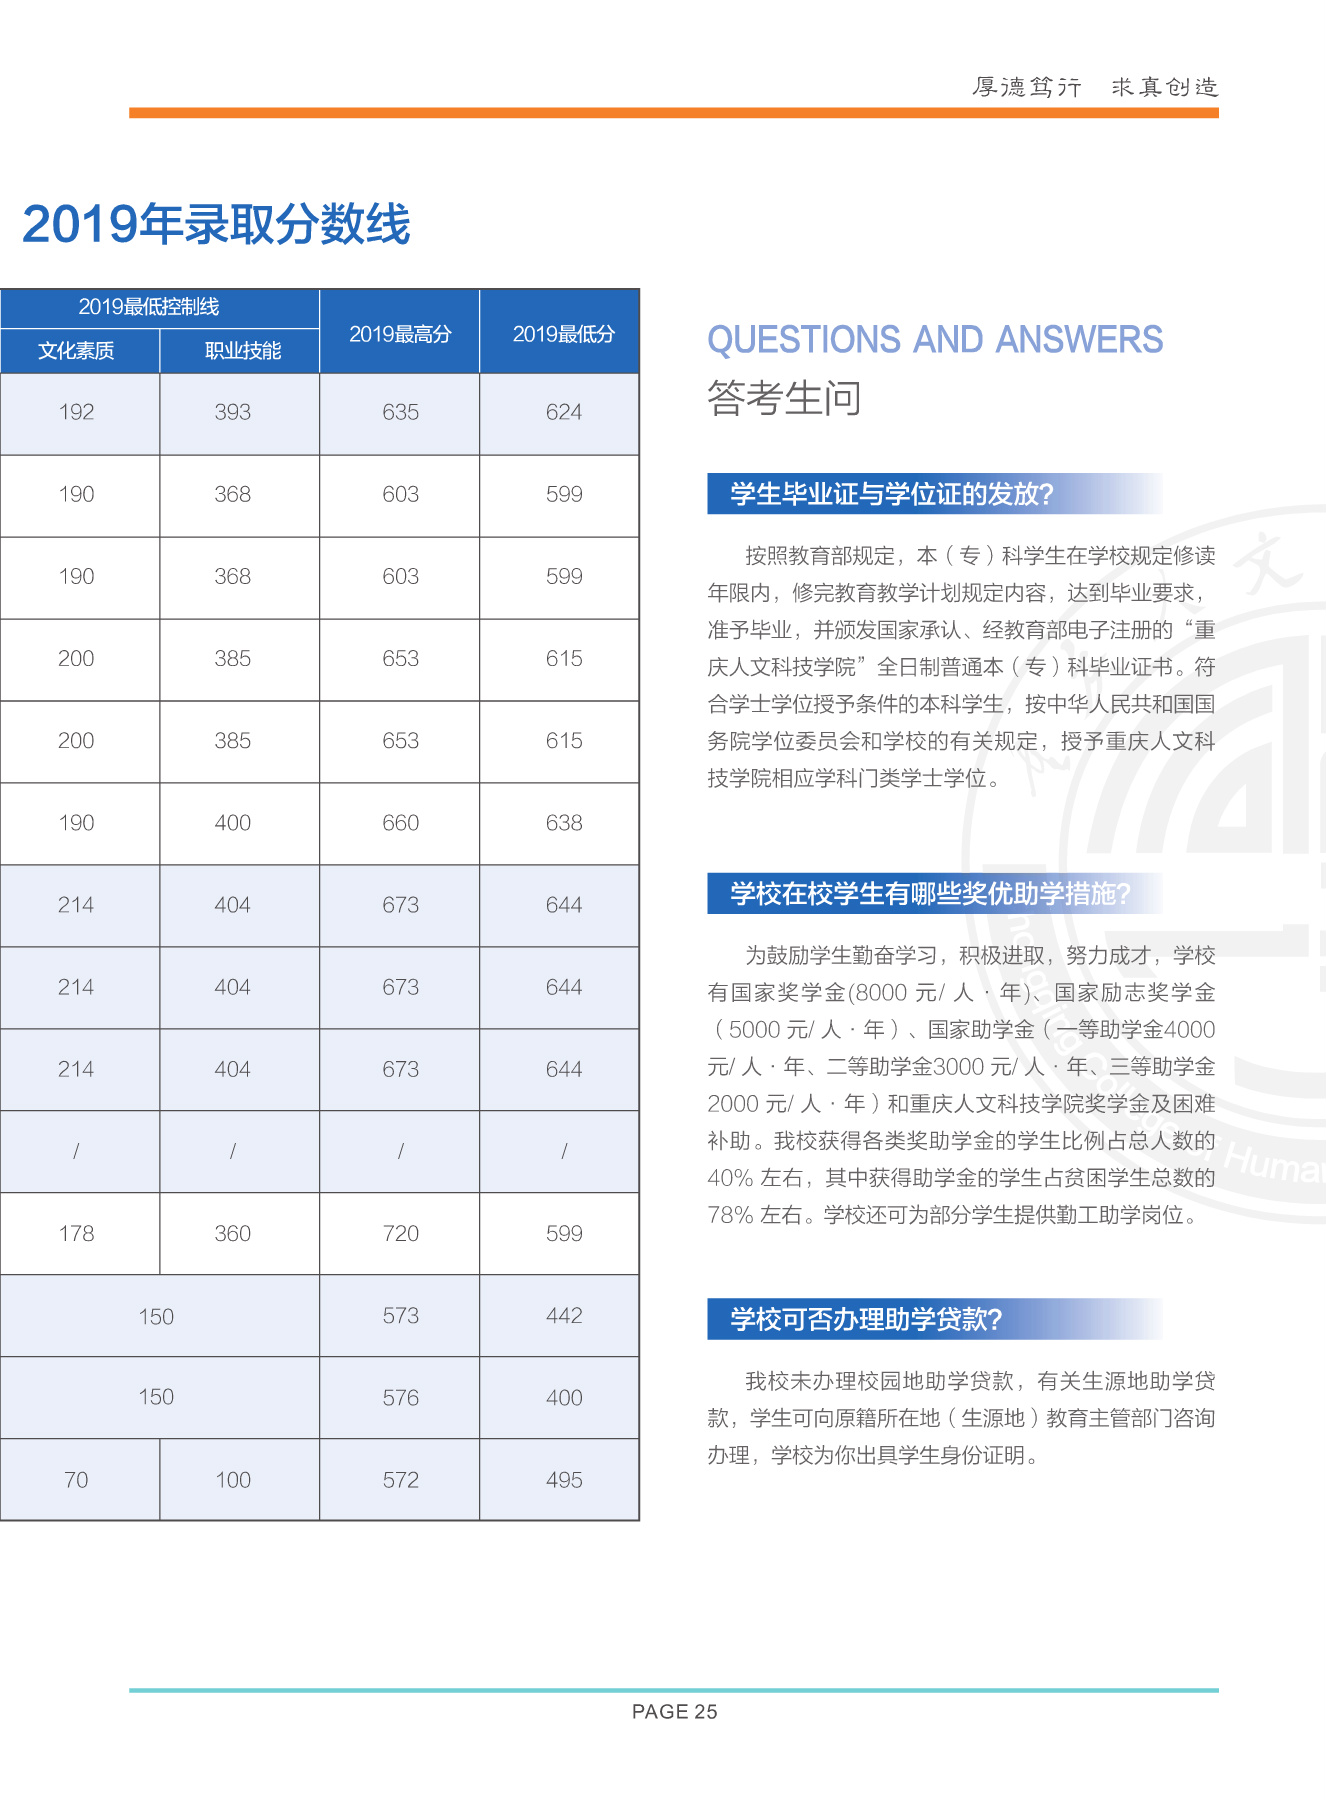 重庆人文科技学院2020年重庆市高职分类招生简章26.jpg